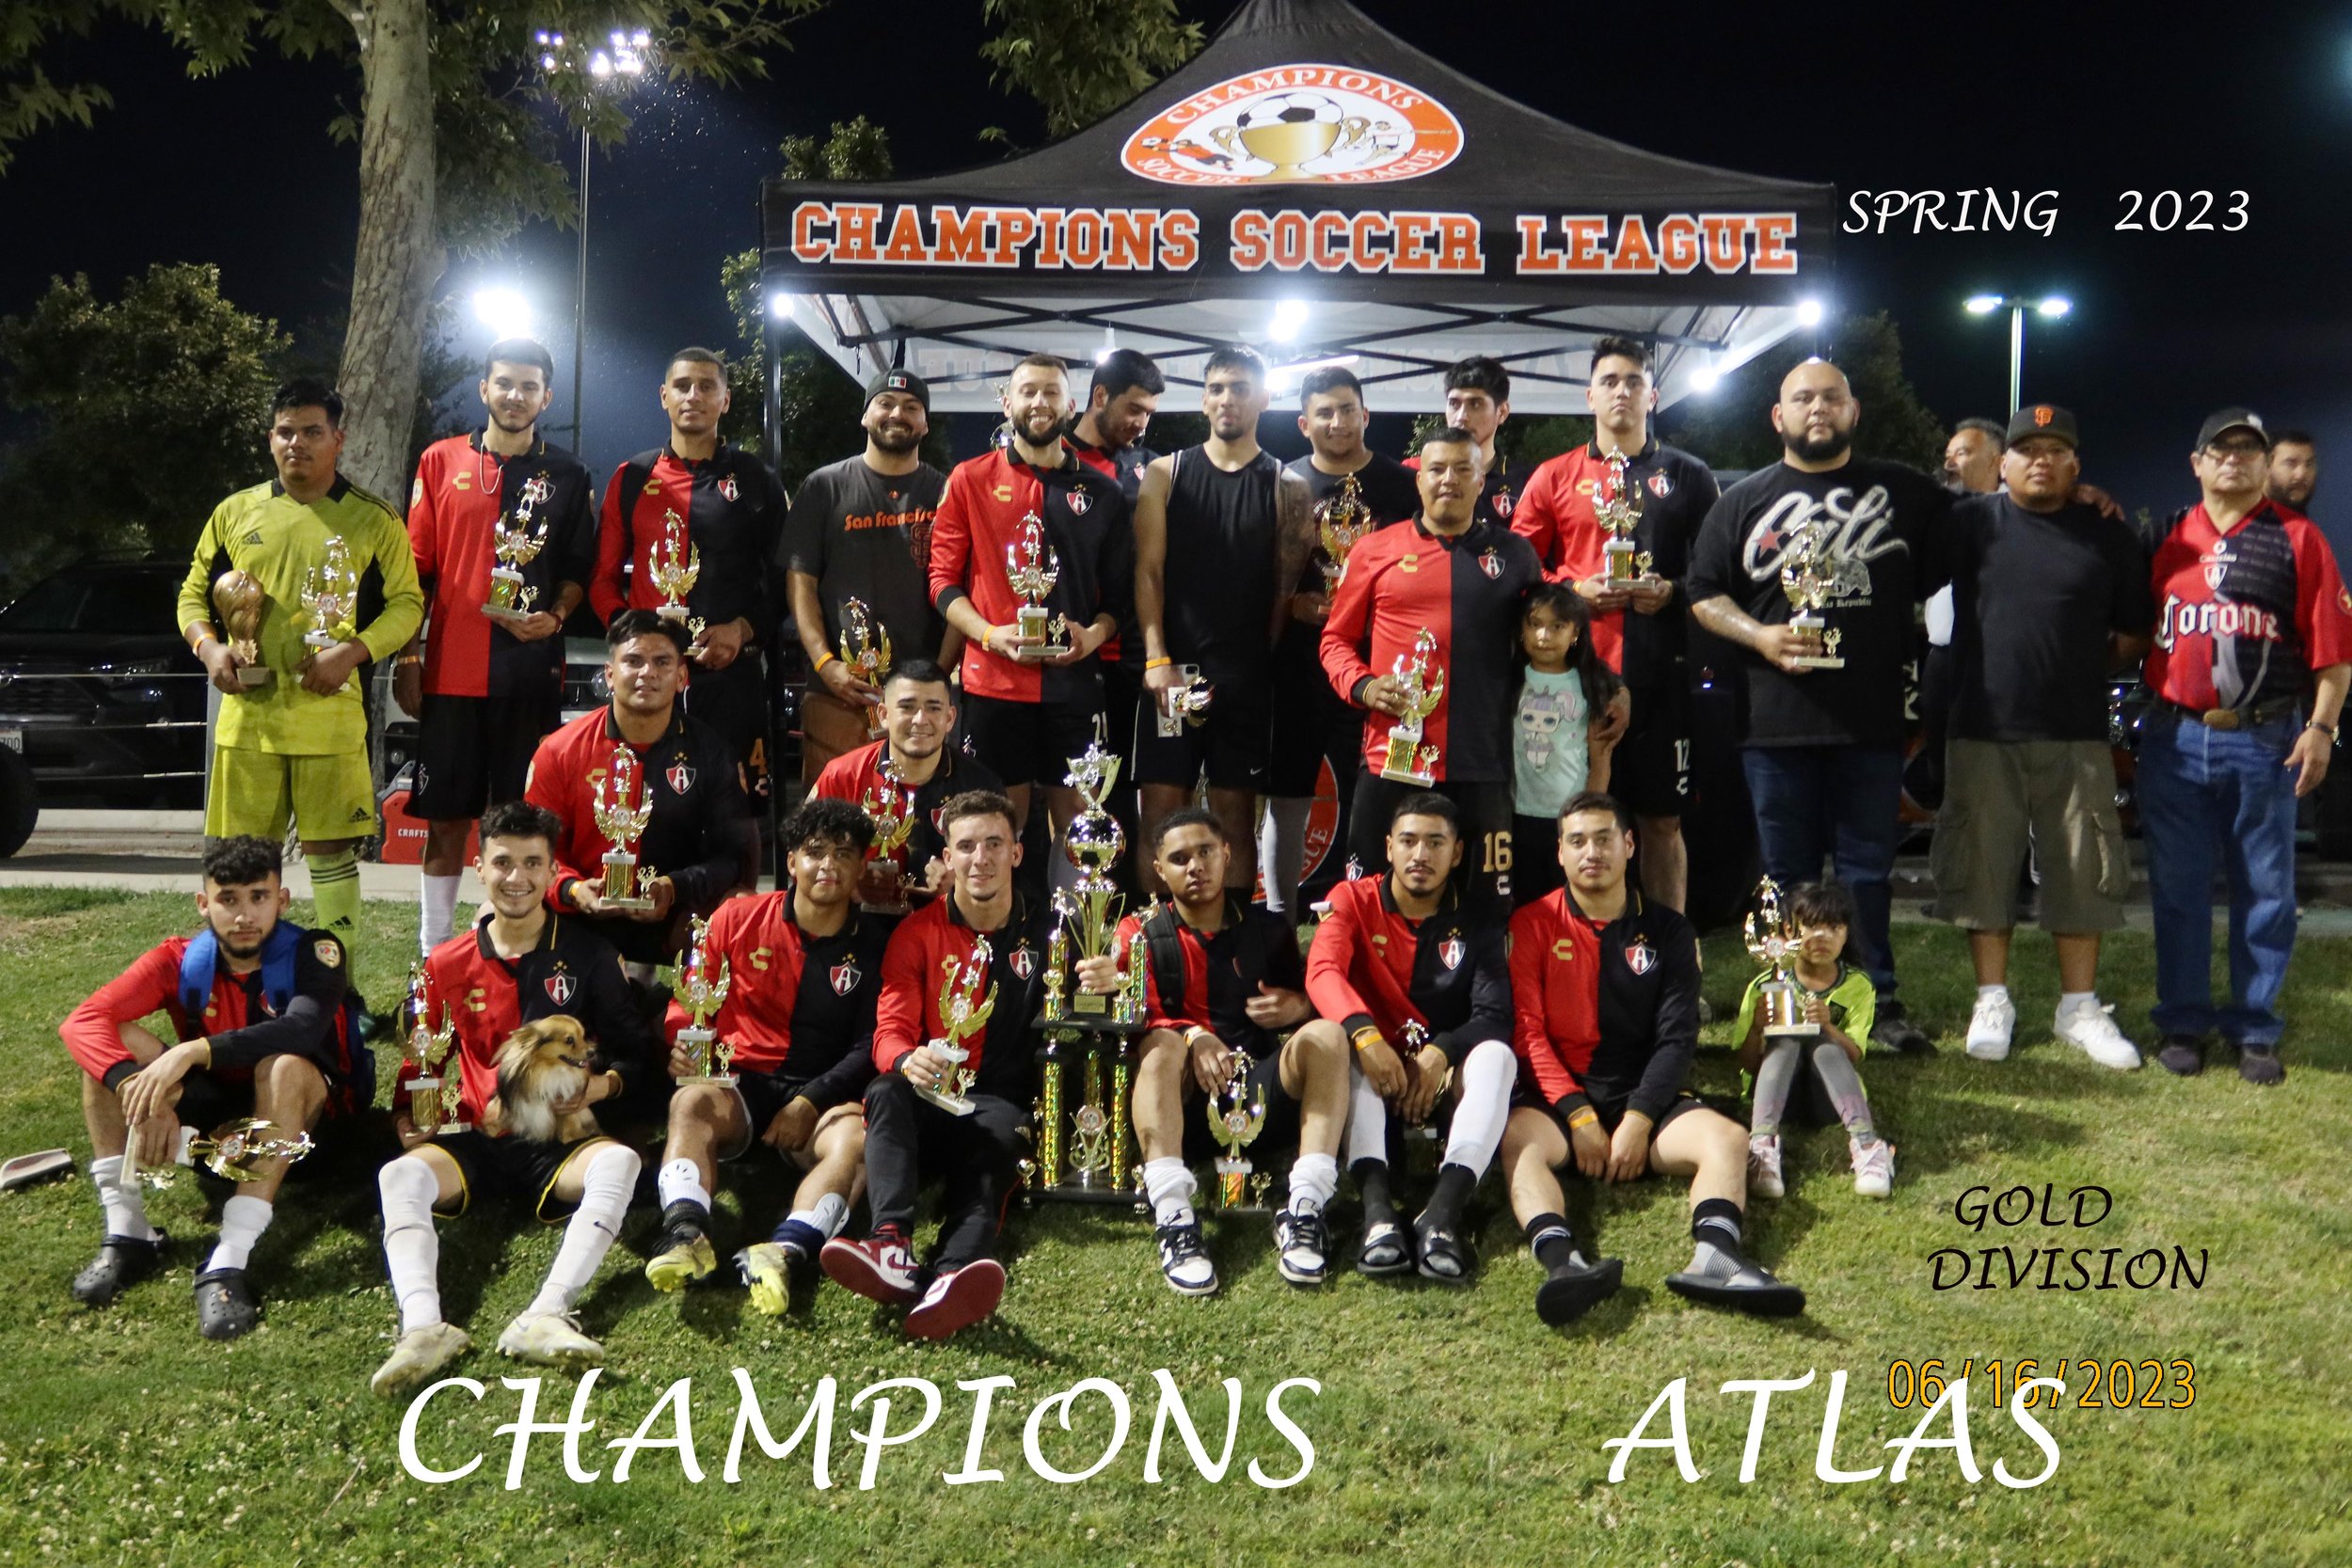 Atlas Champions.jpg